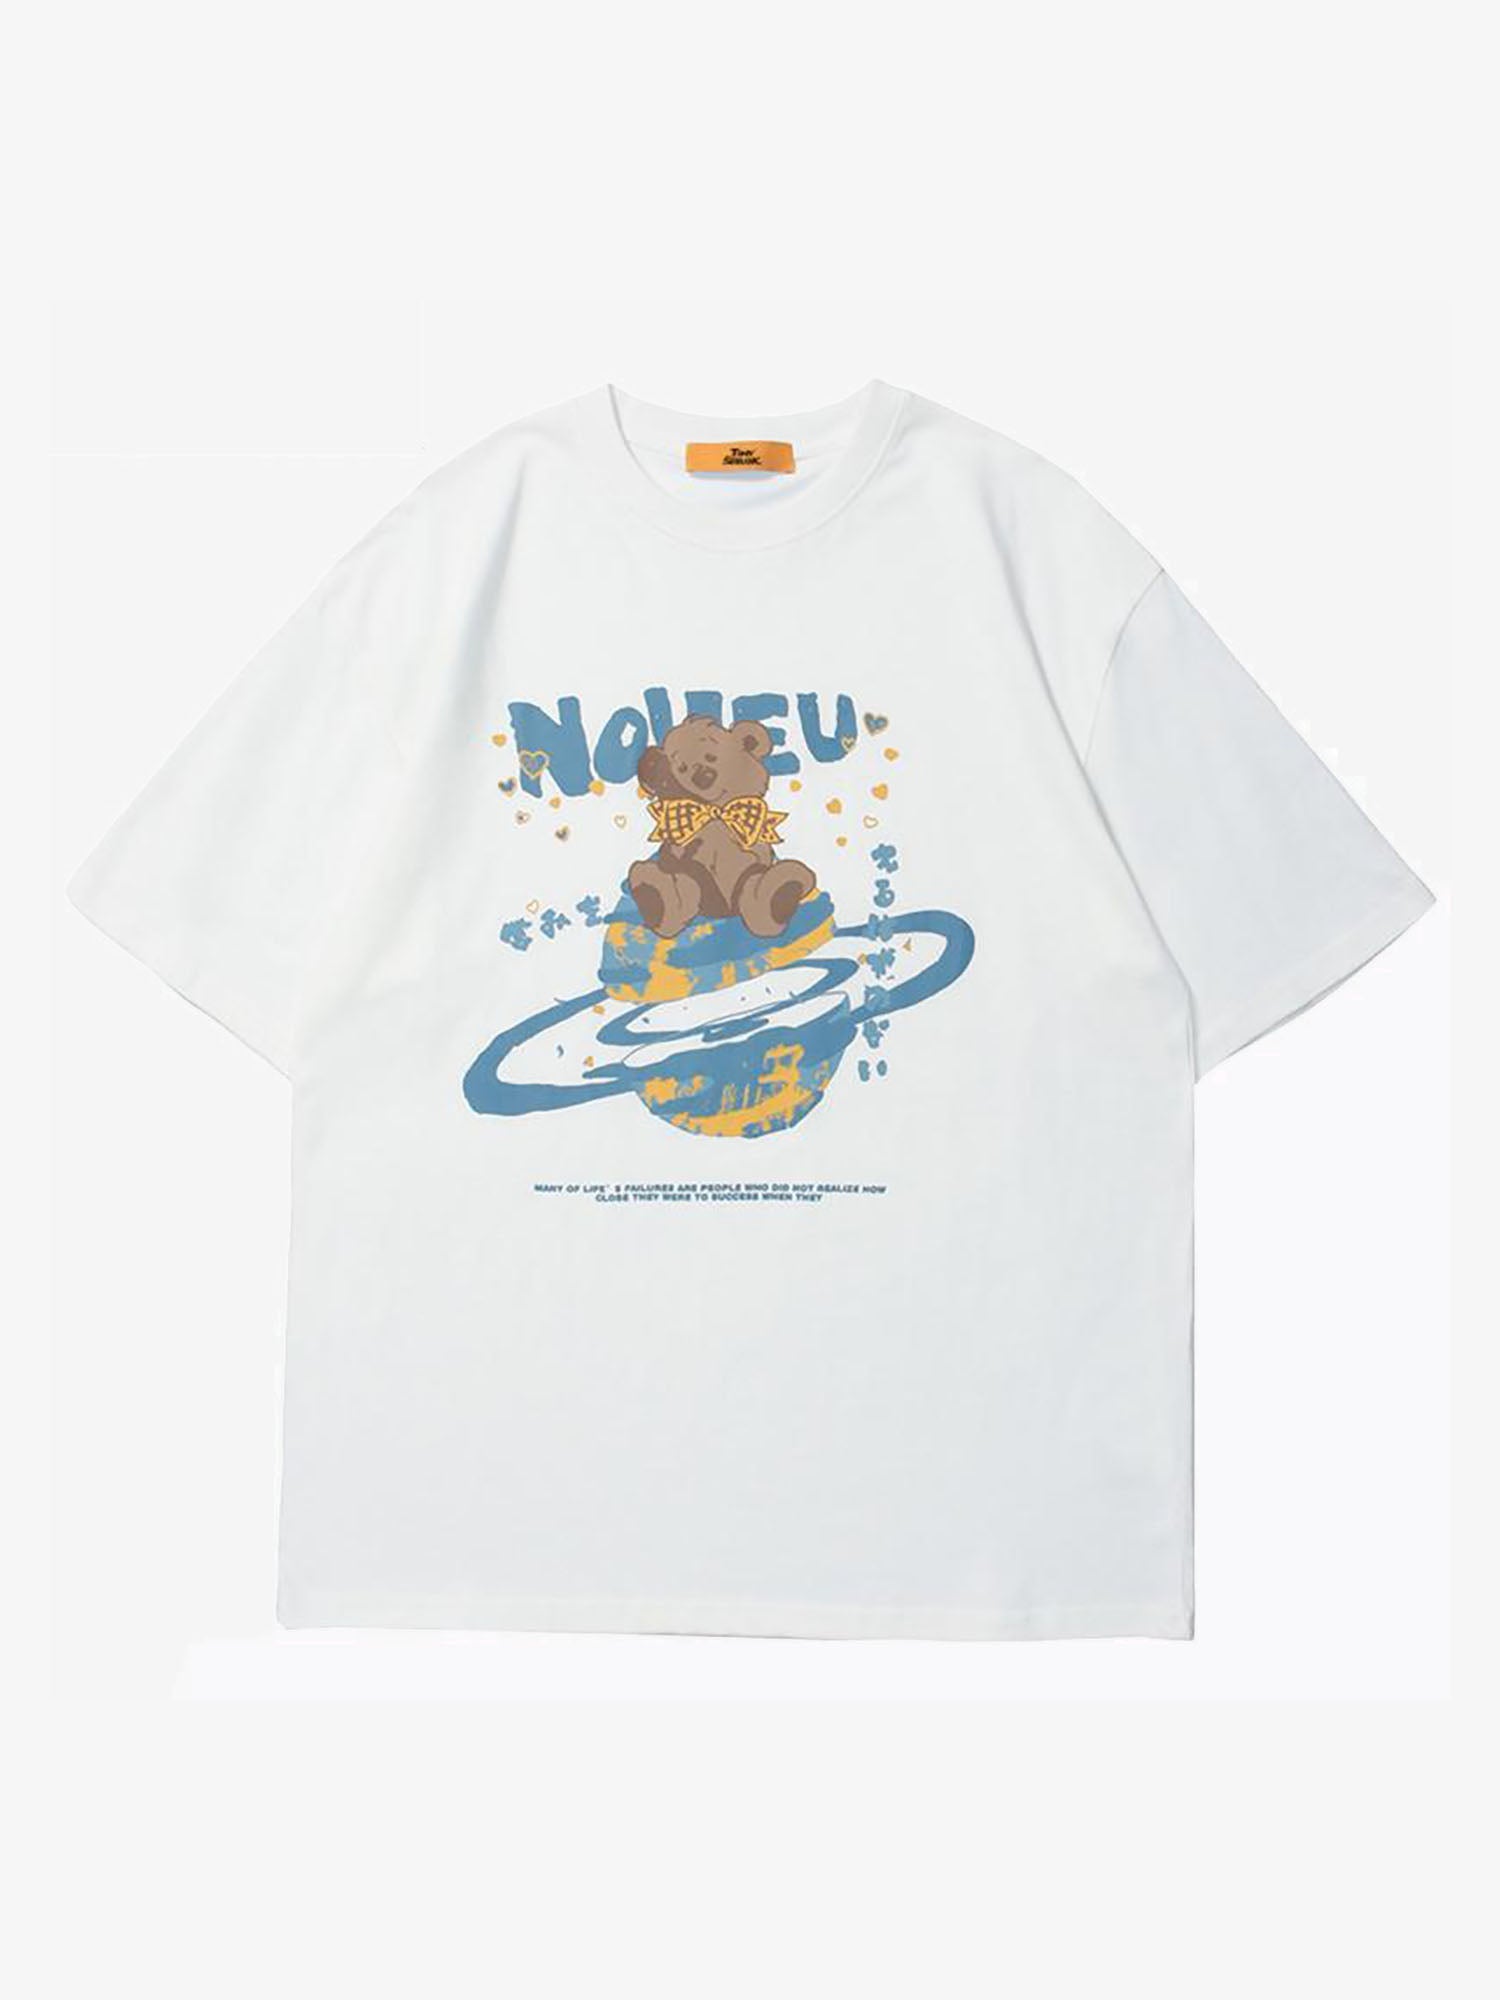 Justnotag T-shirt a maniche corte con lettere Kanji giapponesi con orso di cartone animato